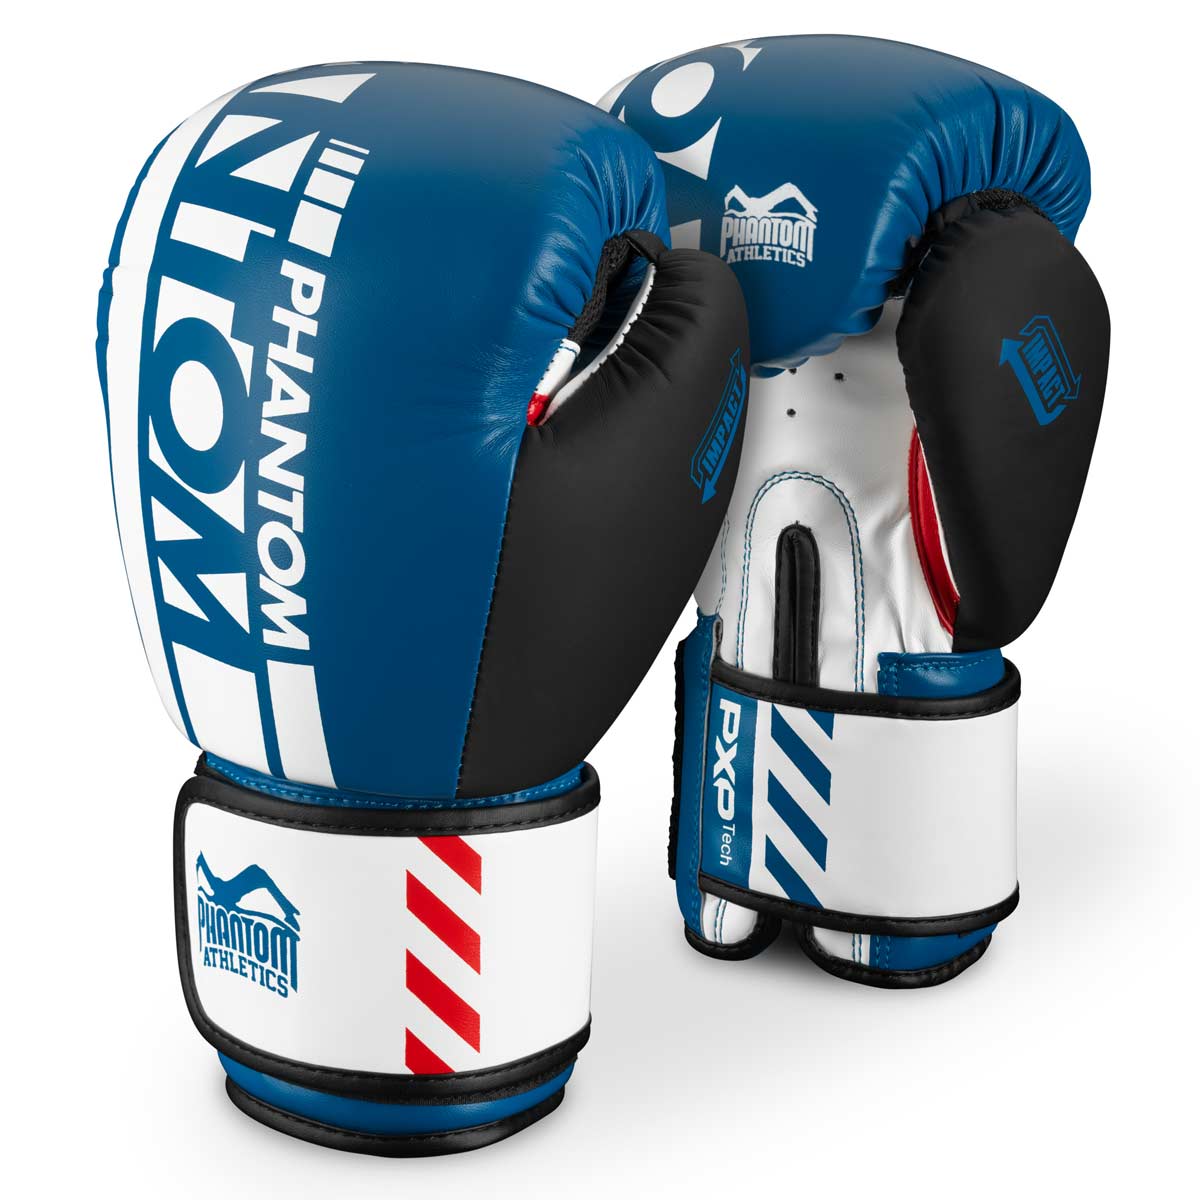 Phantom Boxhandschuhe Apex Blau für deinen Kampfsport. Höchste Qualität. Ideal für Training und Wettkampf.